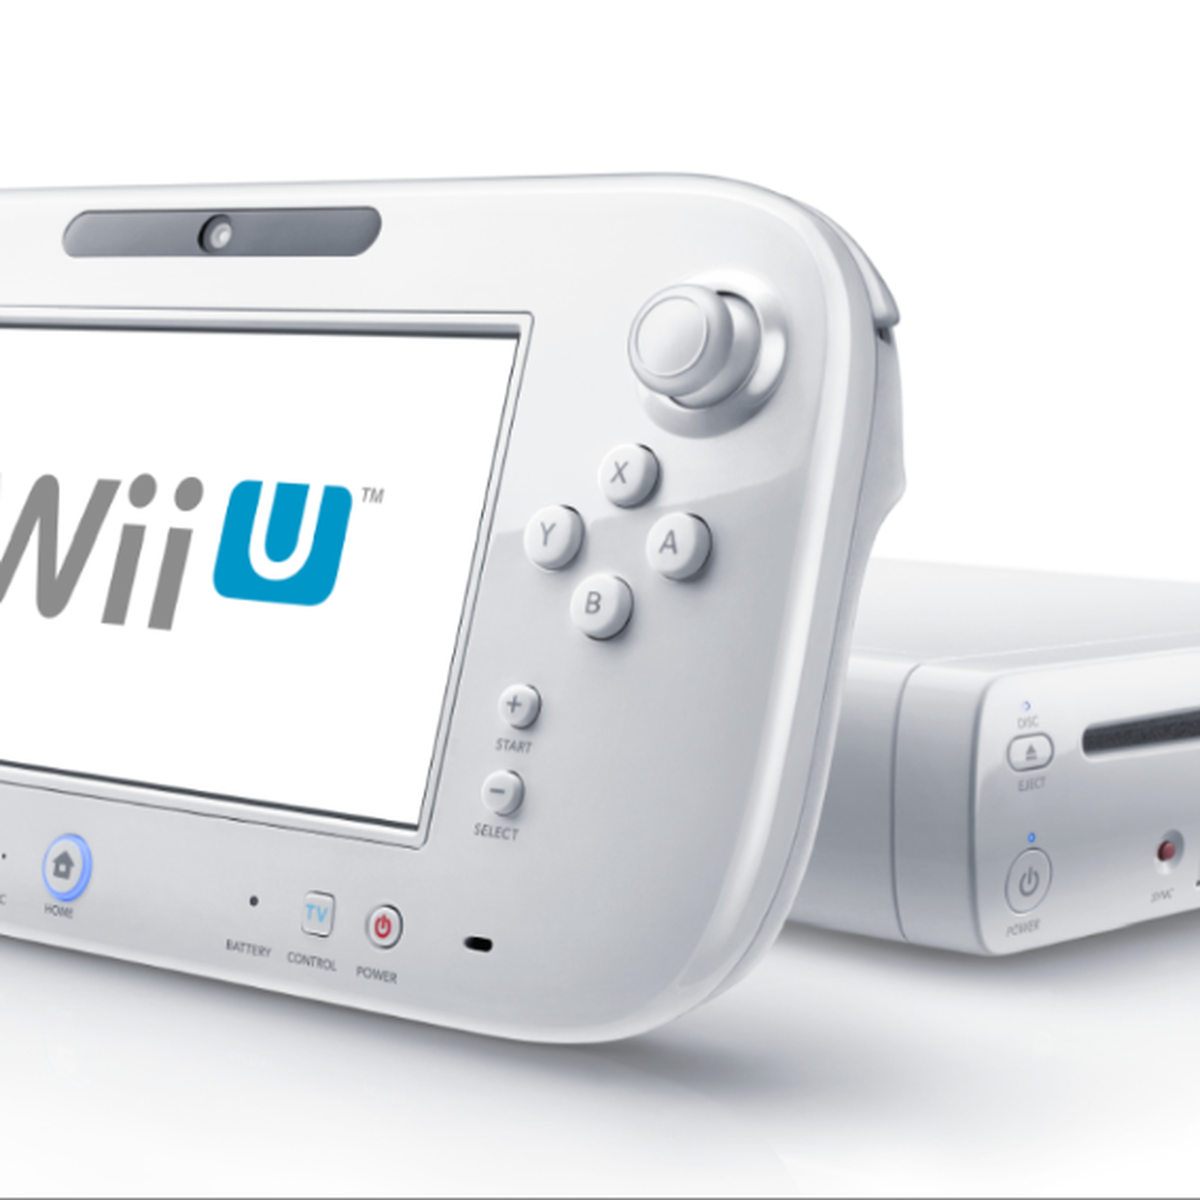 Nueva Wii: la Nintendo Wii U llega a España el 30 de noviembre